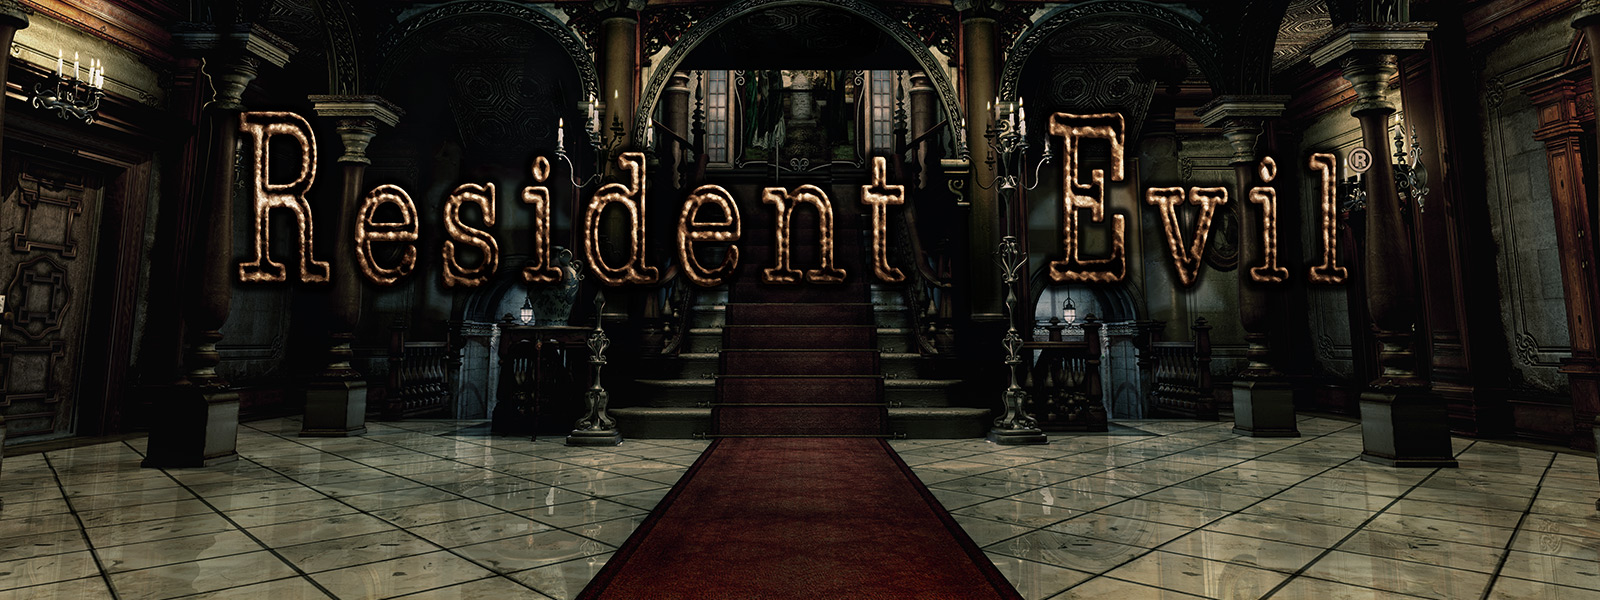 Resident Evil, scène avec une grande entrée voûtée avec des escaliers recouverts de moquette rouge